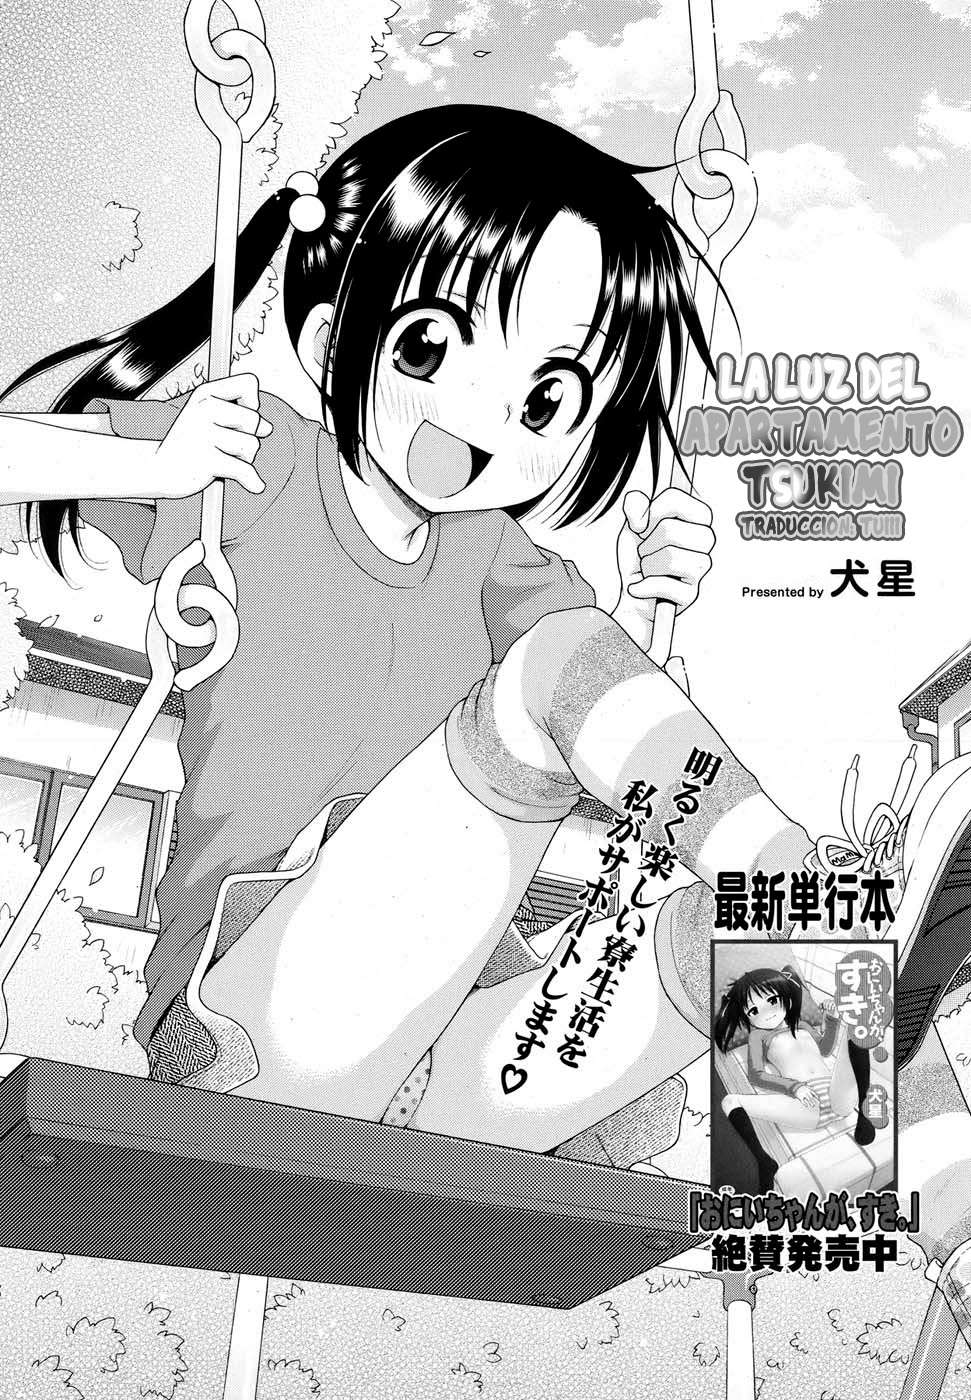 Tsukimisou No Akari (La Luz Del Apartamento Tsukimi) Chapter-1 - 1